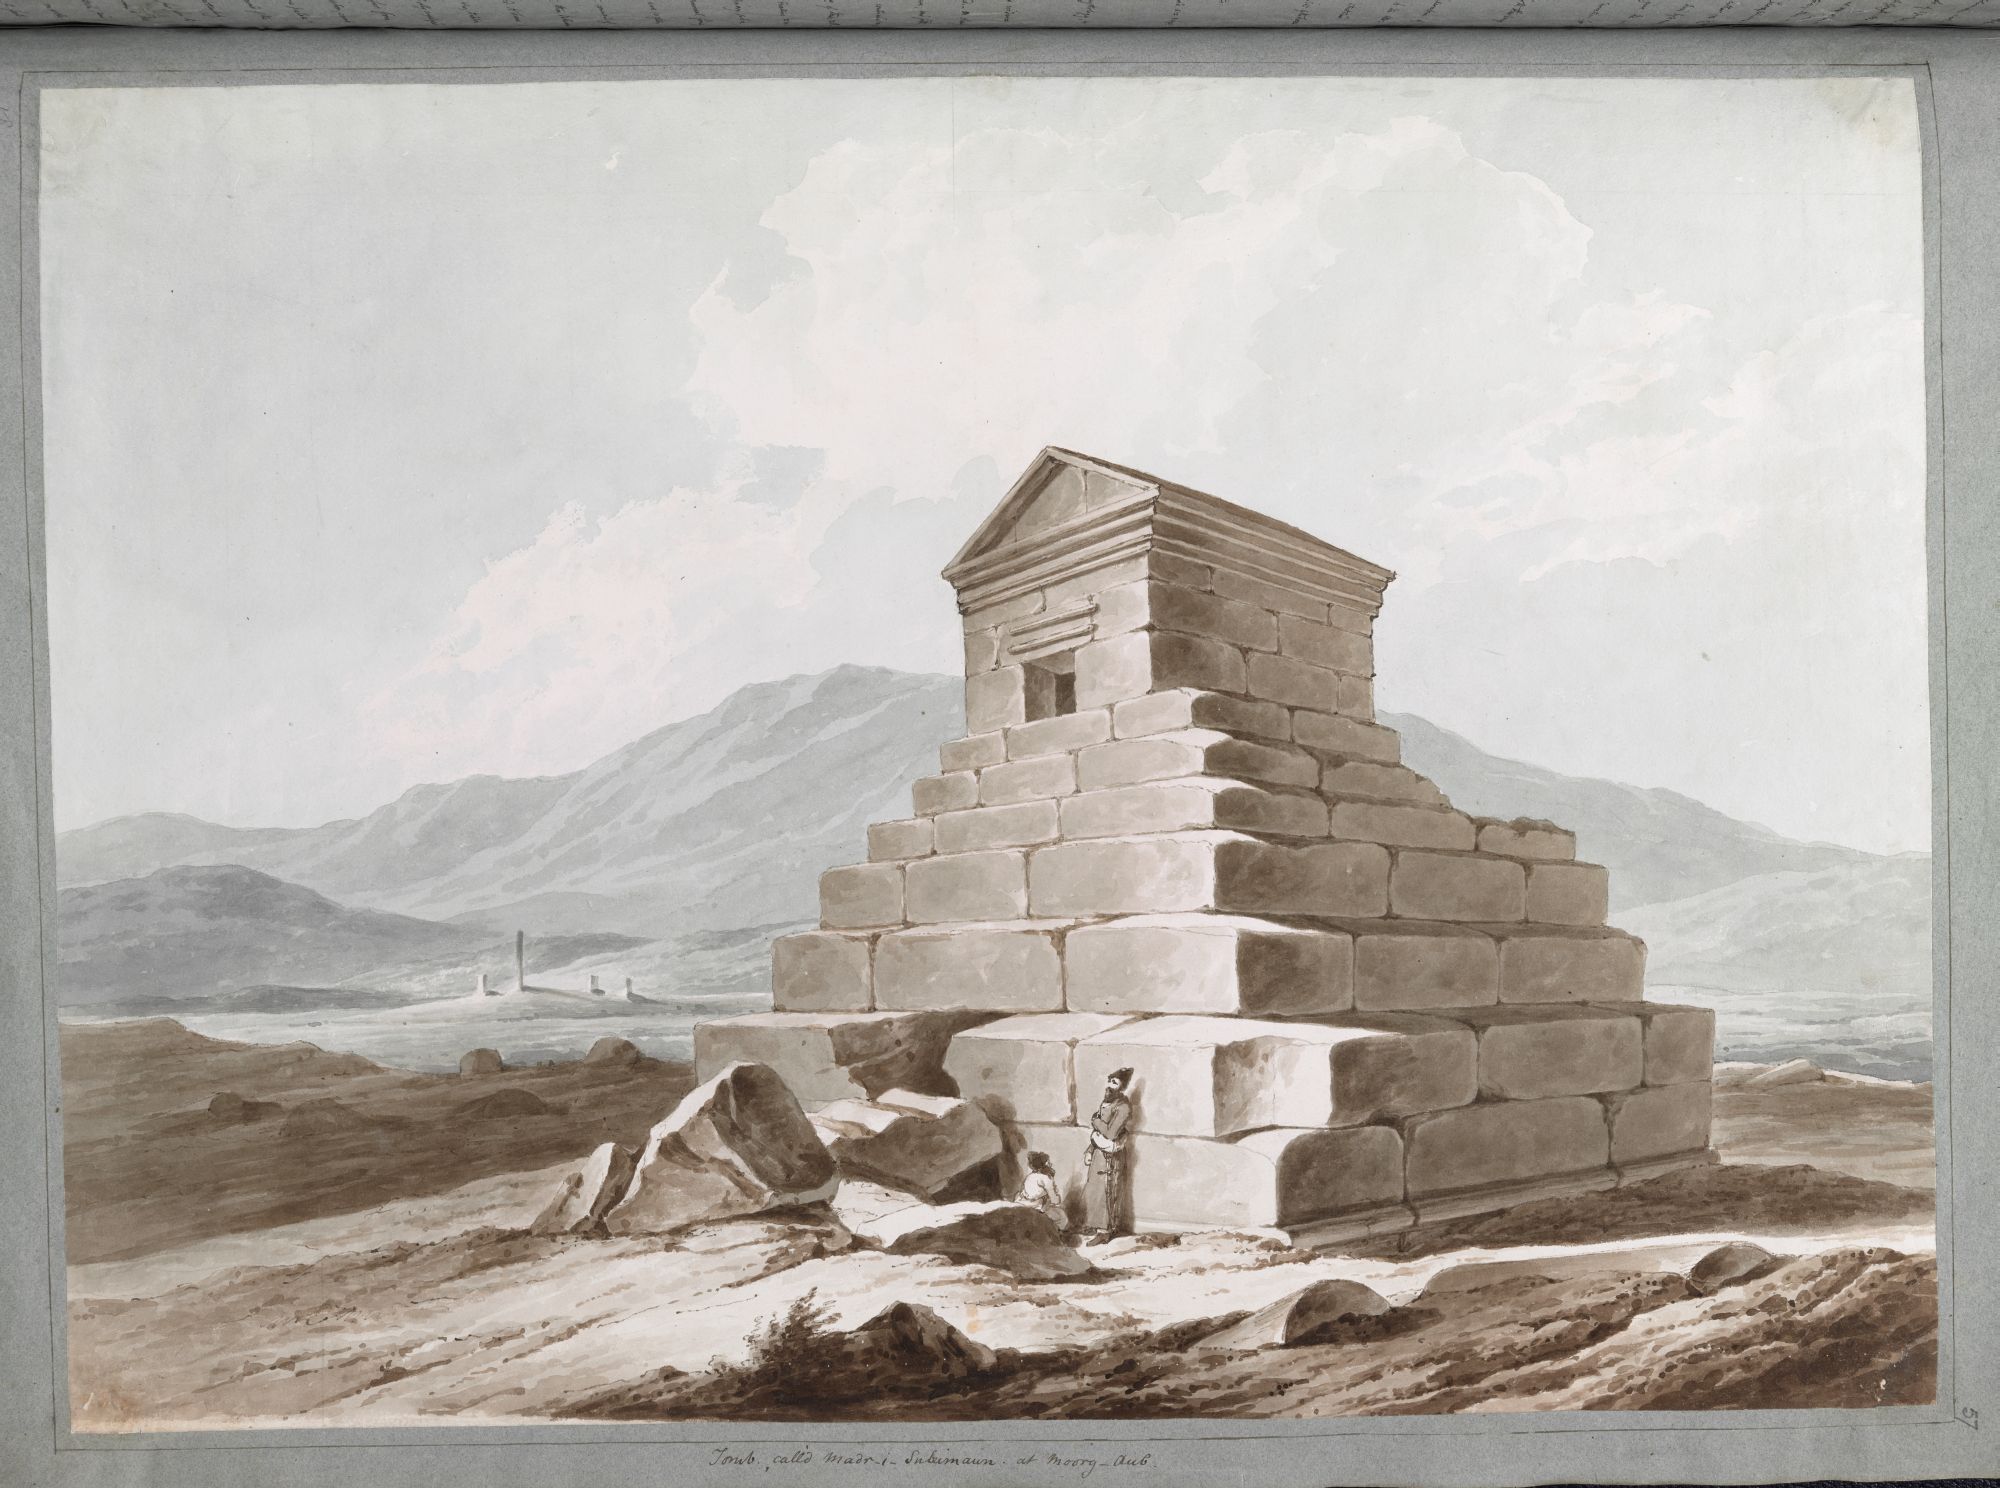 Tombe de Cyrus le Grand. Sir Robert Ker Porter a identifié cette ziggourat à Pasargadas comme étant le mausolée de Cyrus le Grand.